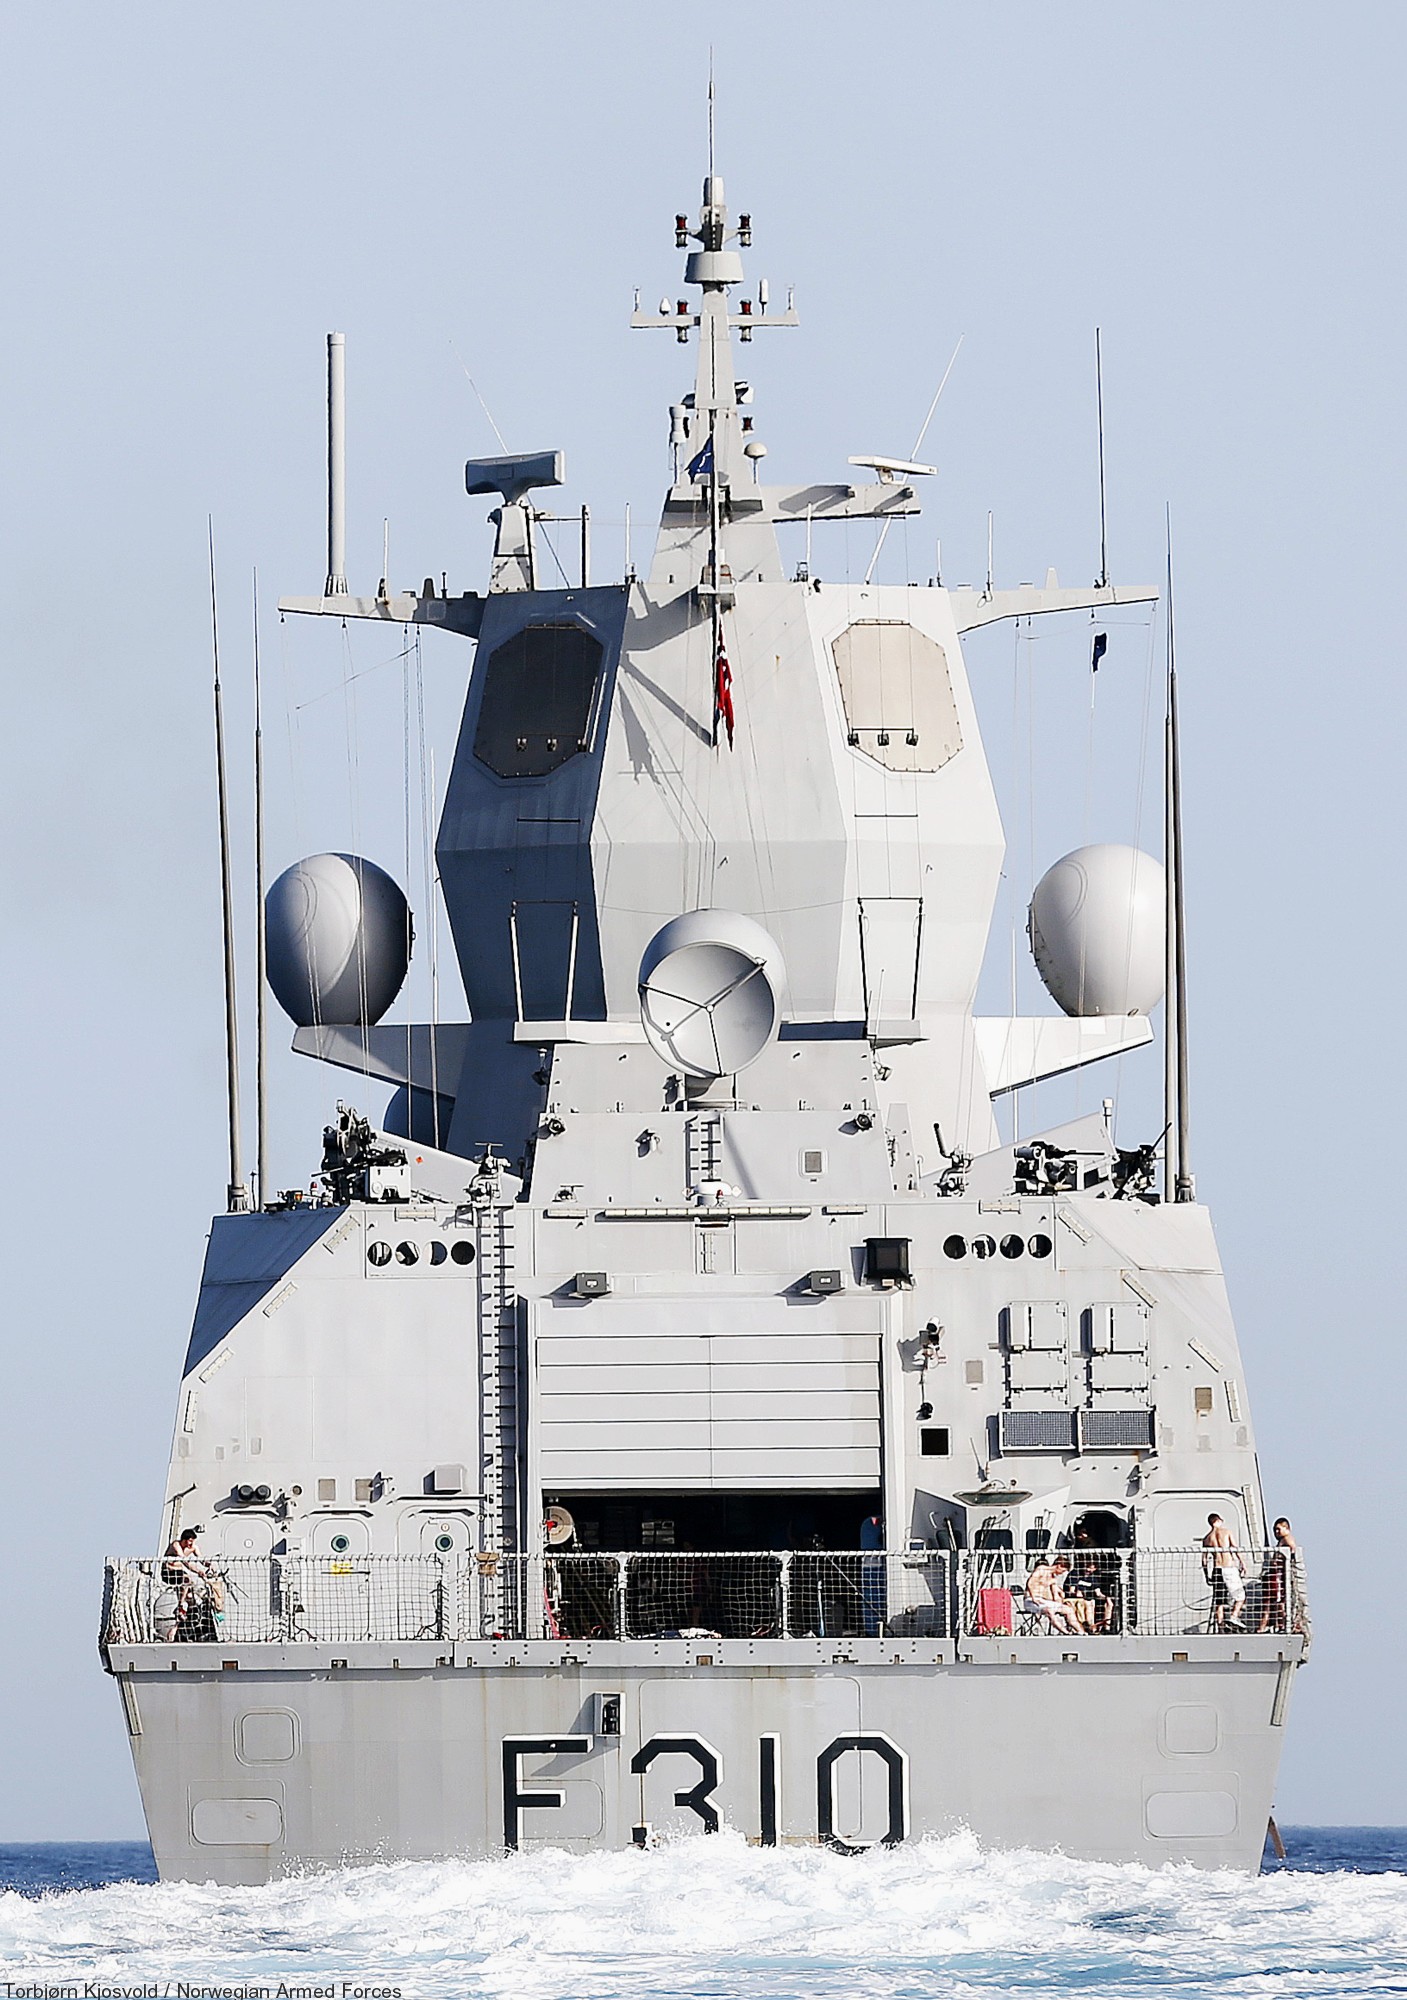 f-310 fridtjof nansen hnoms knm frigate royal norwegian navy sjoforsvaret 20a